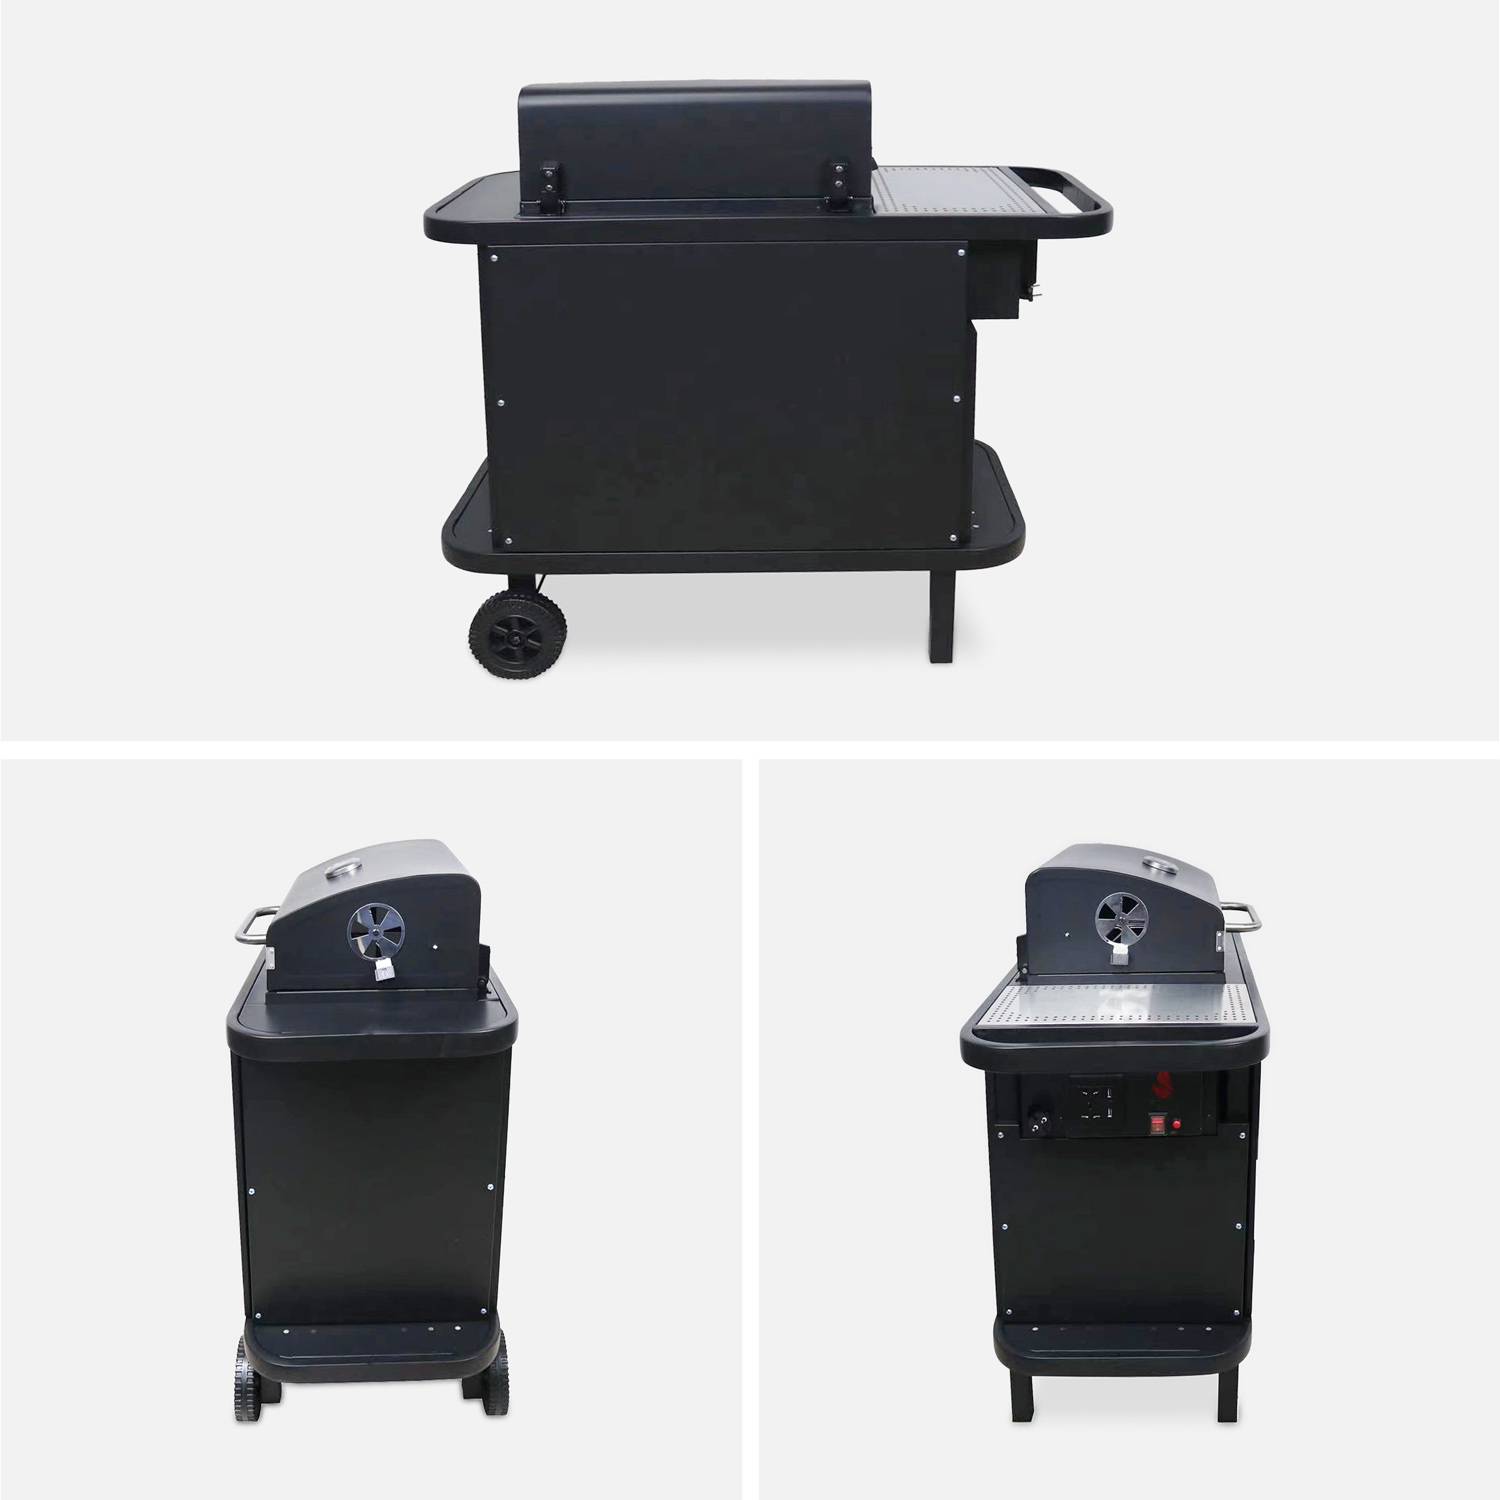 Houtskoolbarbecue - SNGONE 2.0 noir - barbecue met Bluetooth-verbinding, automatische ontsteking, deksel, bakplaat, USB LED-verlichting, gereedschaphouder, warmhoudrooster & asvanger Photo5